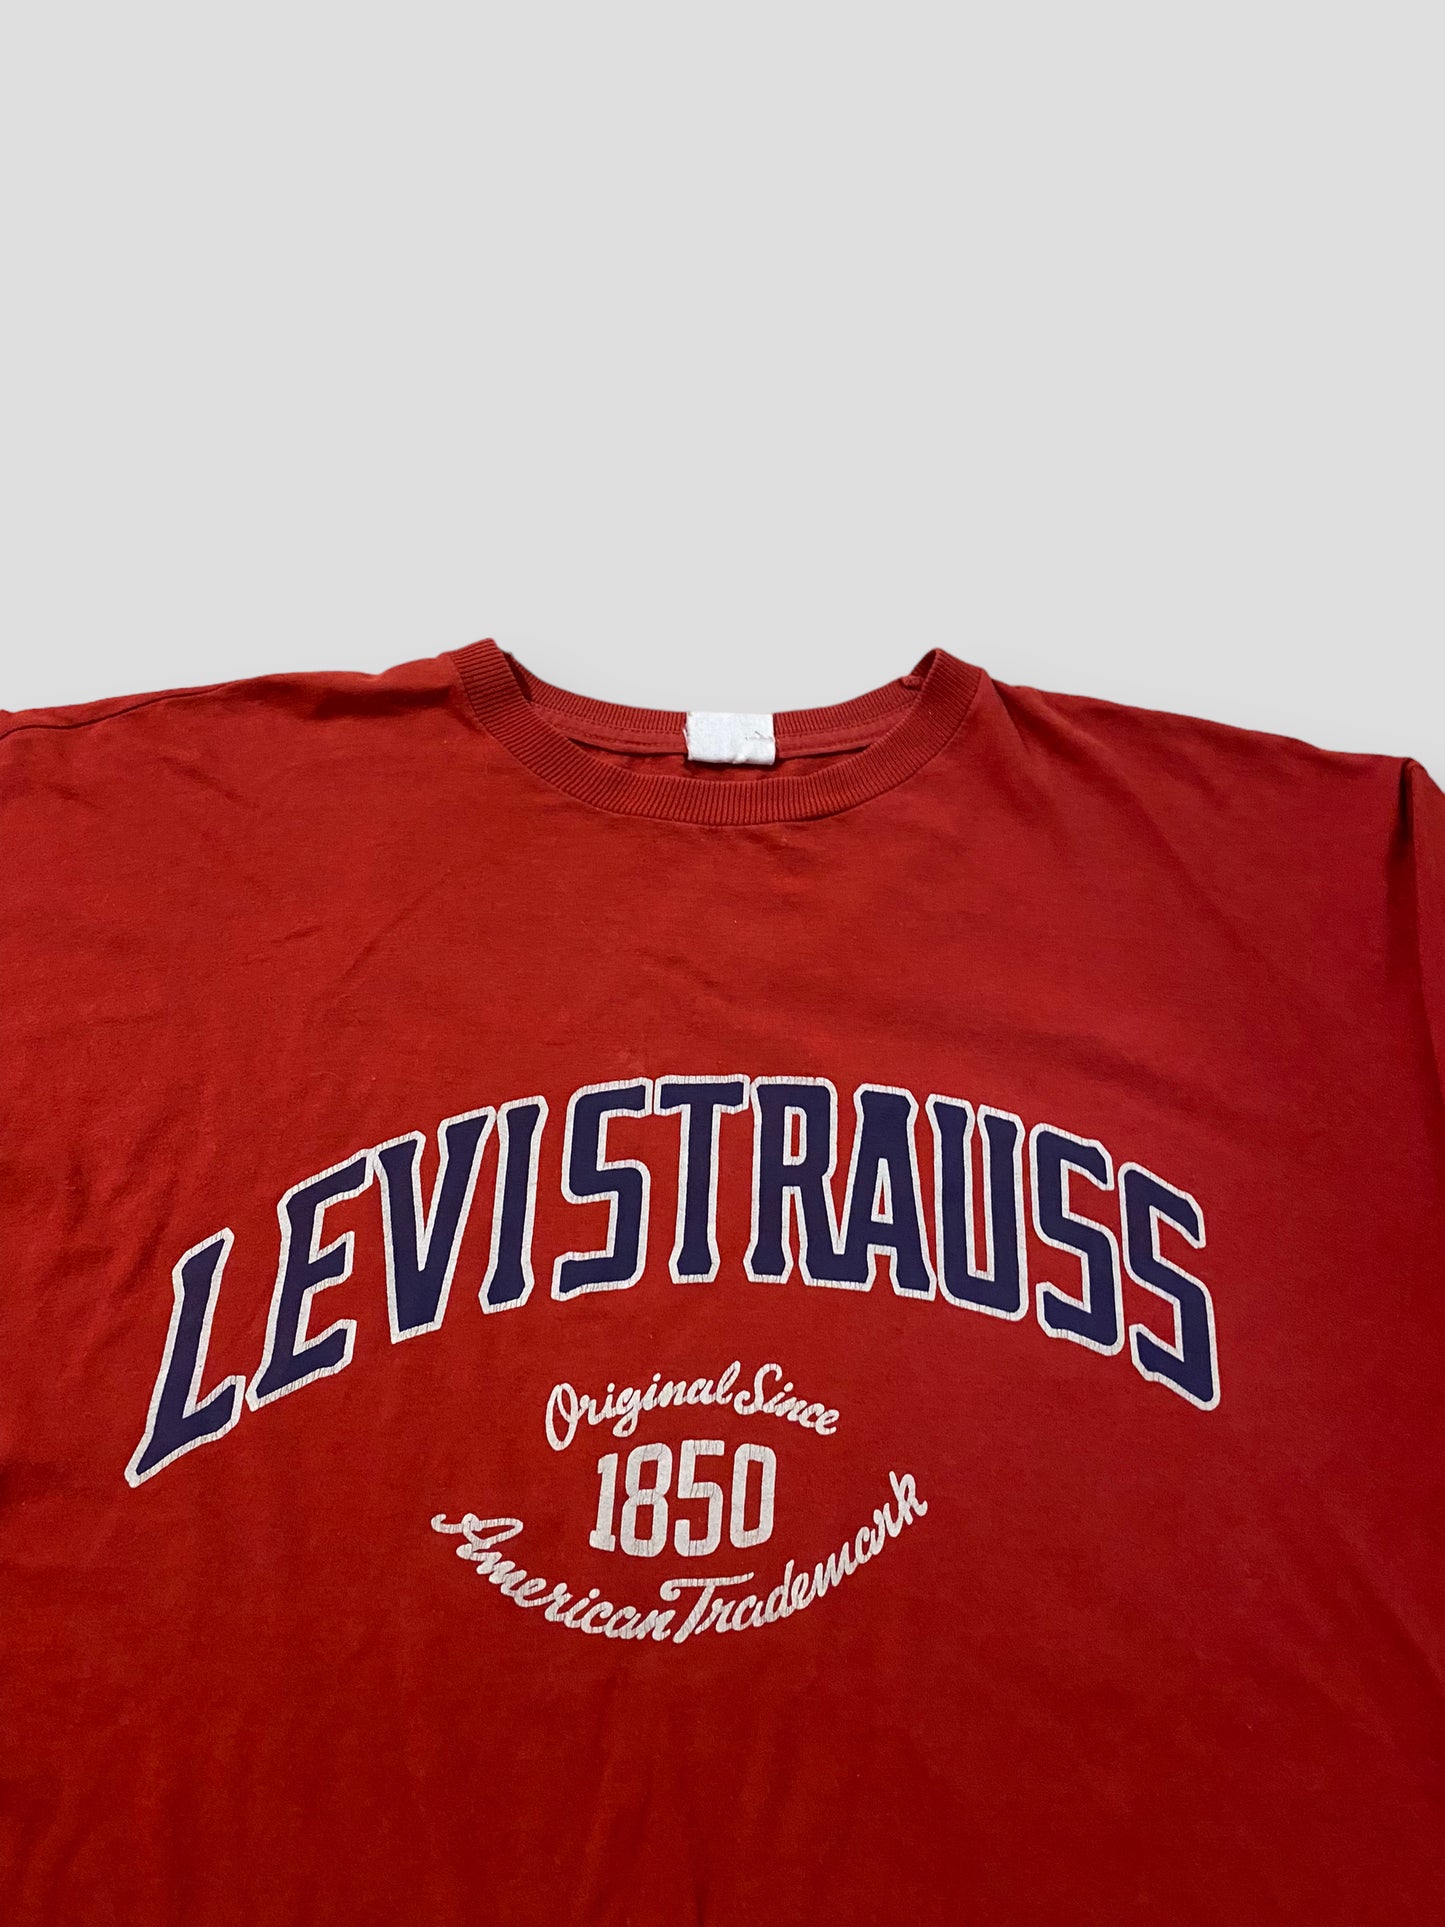 Levis Vintage Longsleeve (XL)